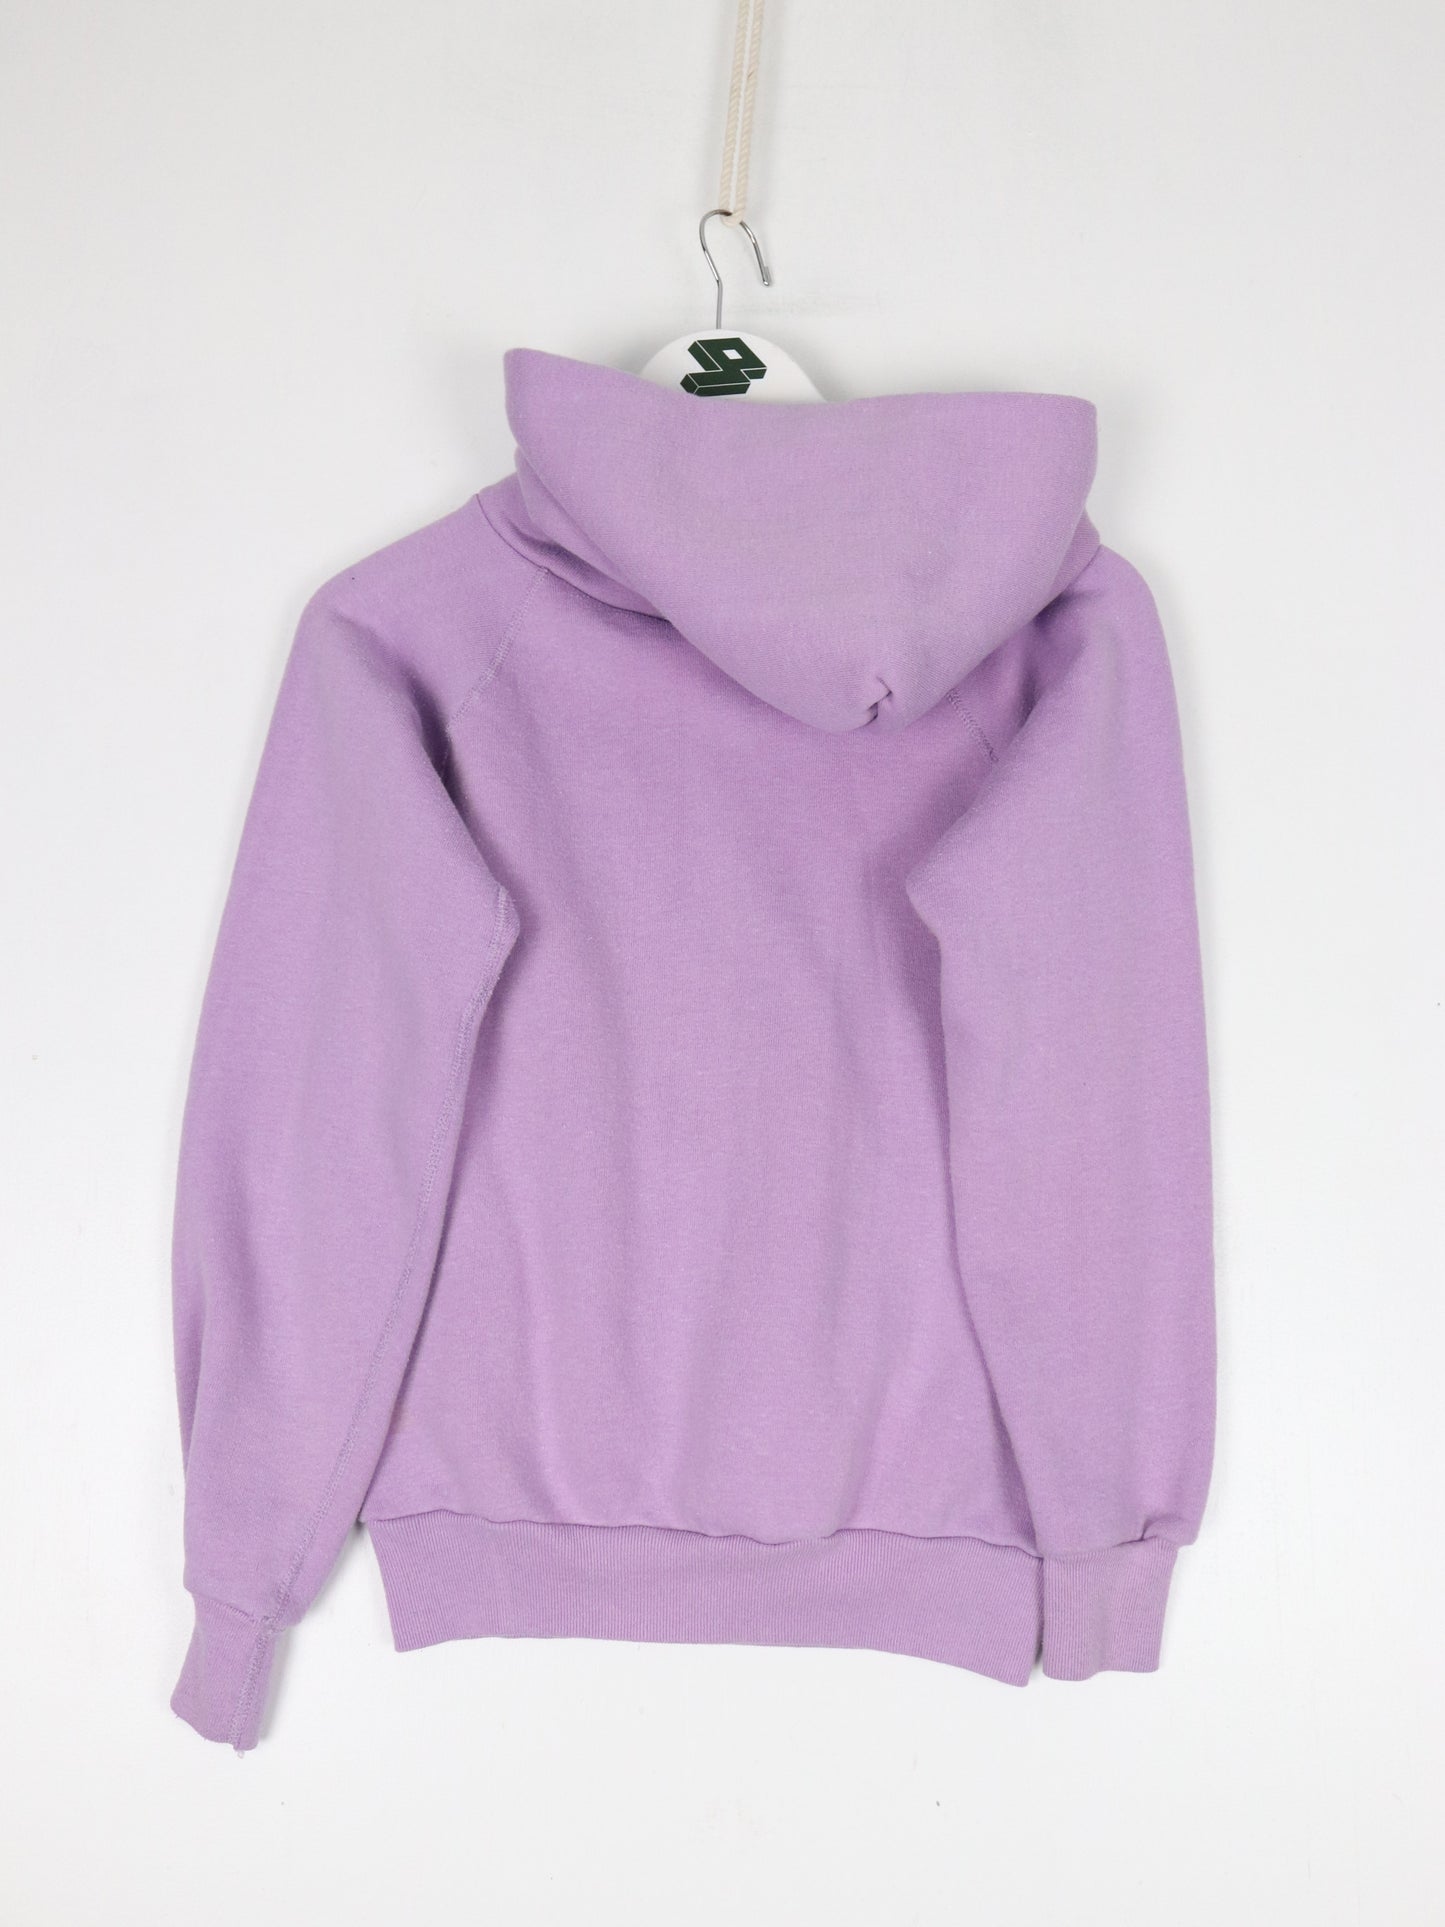 Vintage Blank Hoodie Youth Medium Purple Sweatshirt 70s 80s